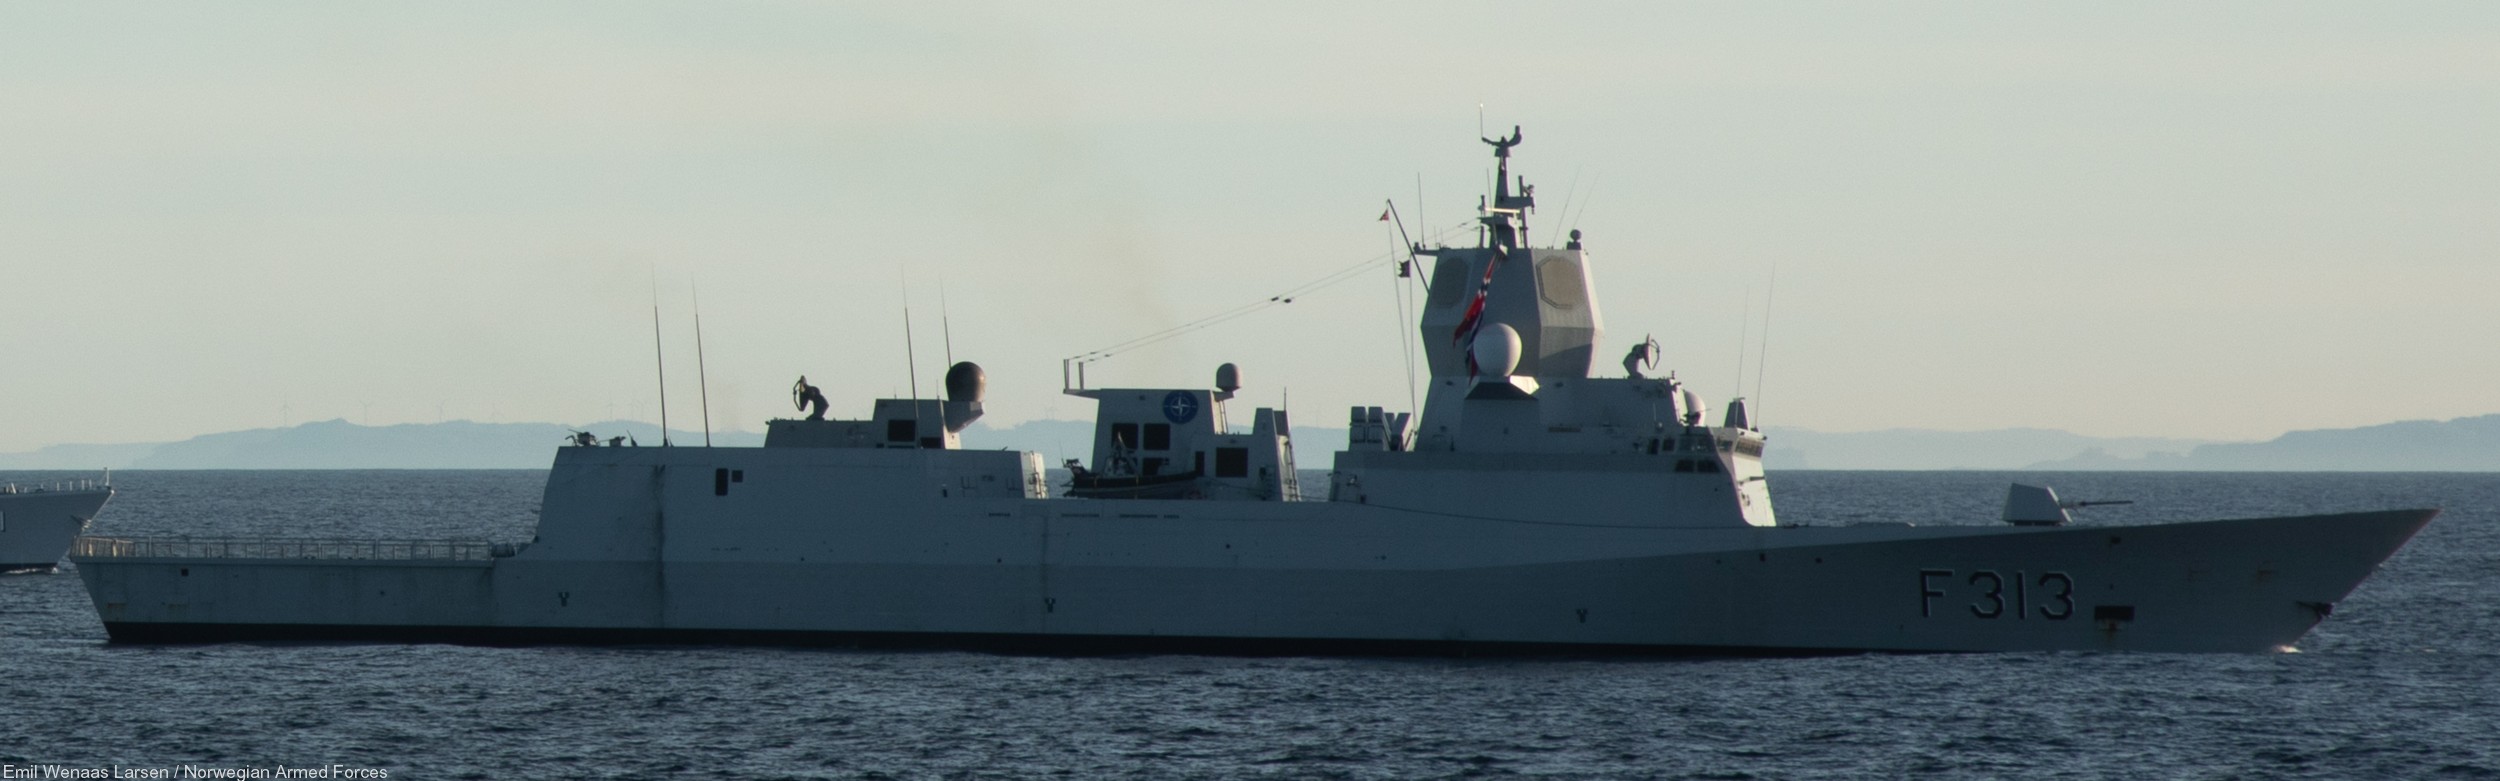 f-313 helge ingstad hnoms knm nansen class frigate royal norwegian navy 14 nato exercise trident juncture 2018